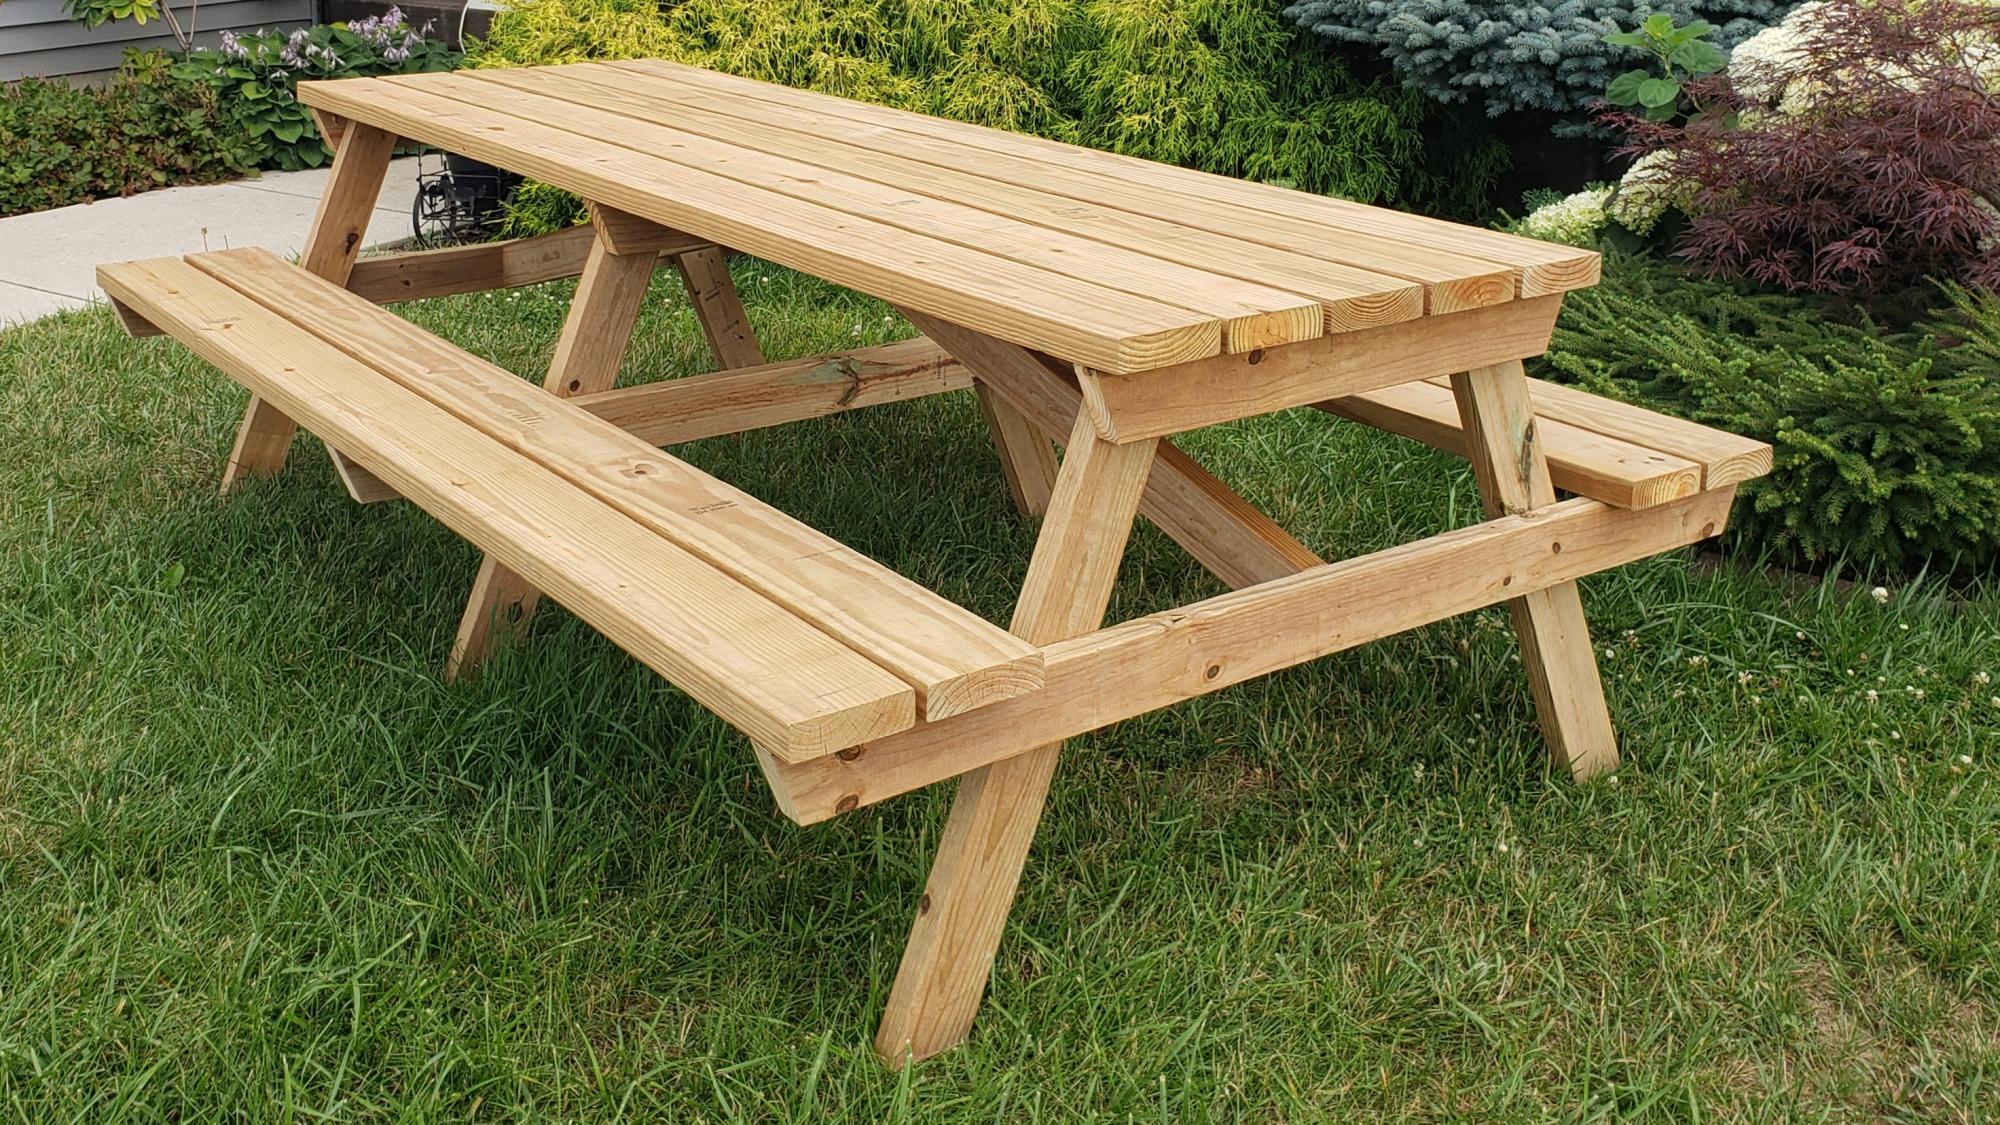  plans building a picnic table